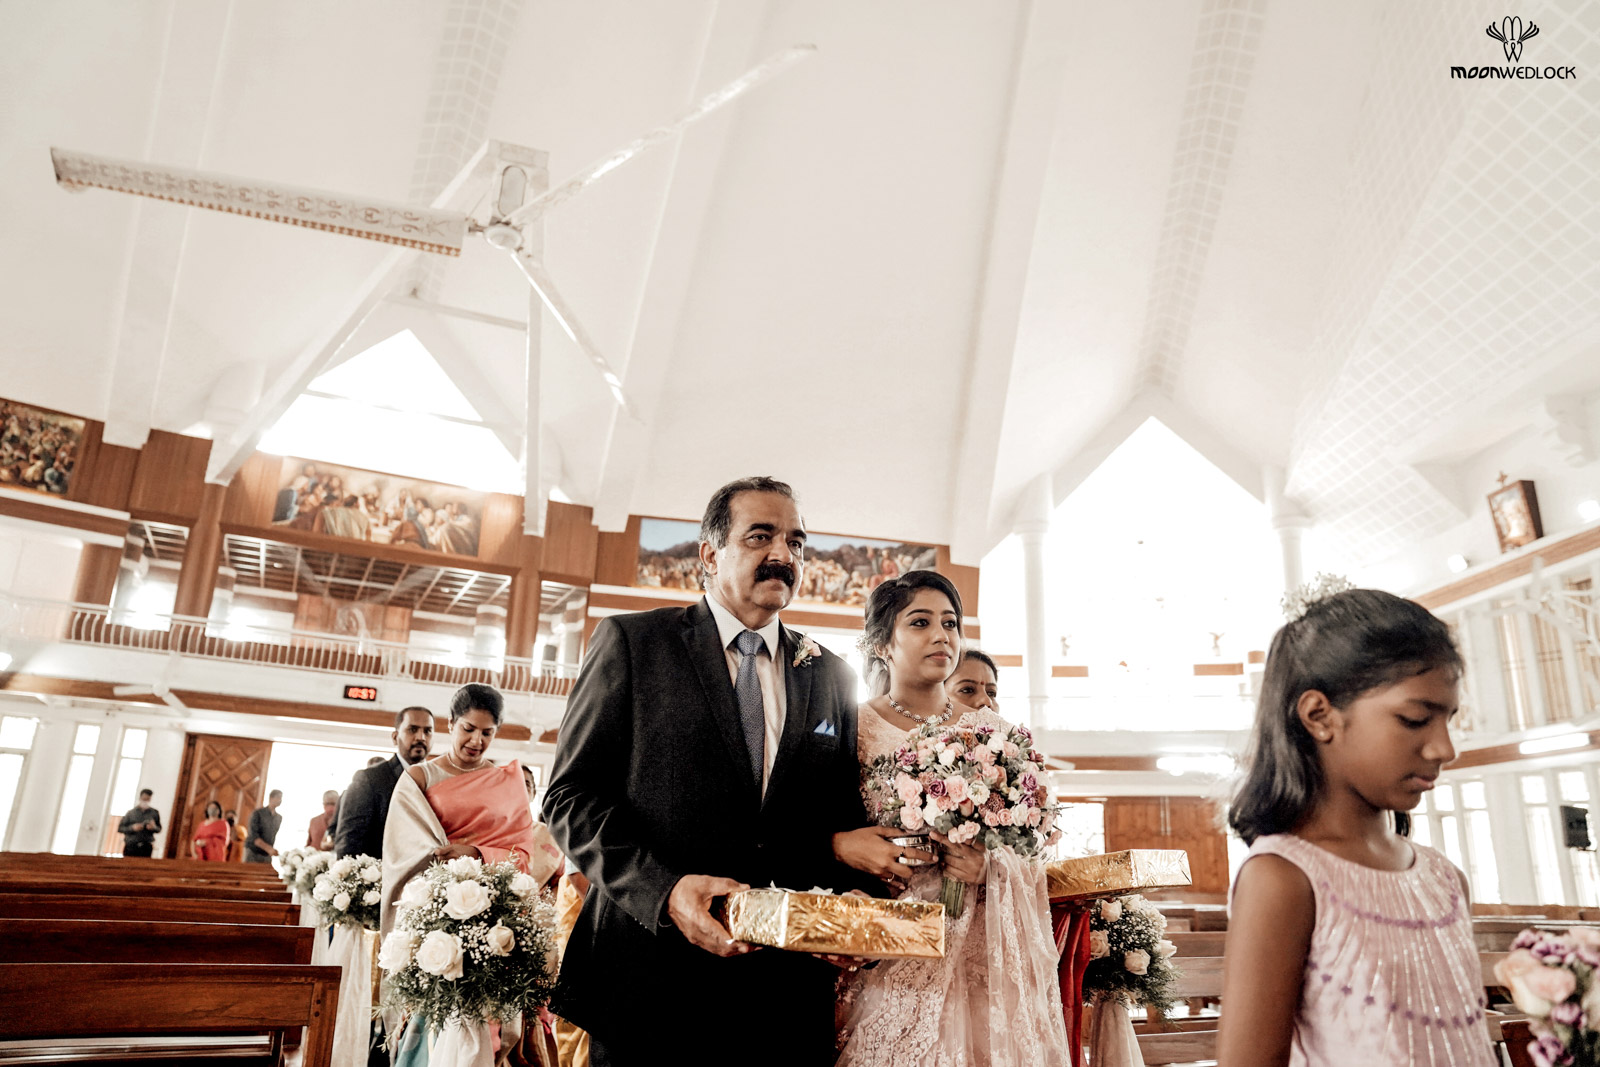 bangalore-christian-wedding-photography-moonwedlock (22)